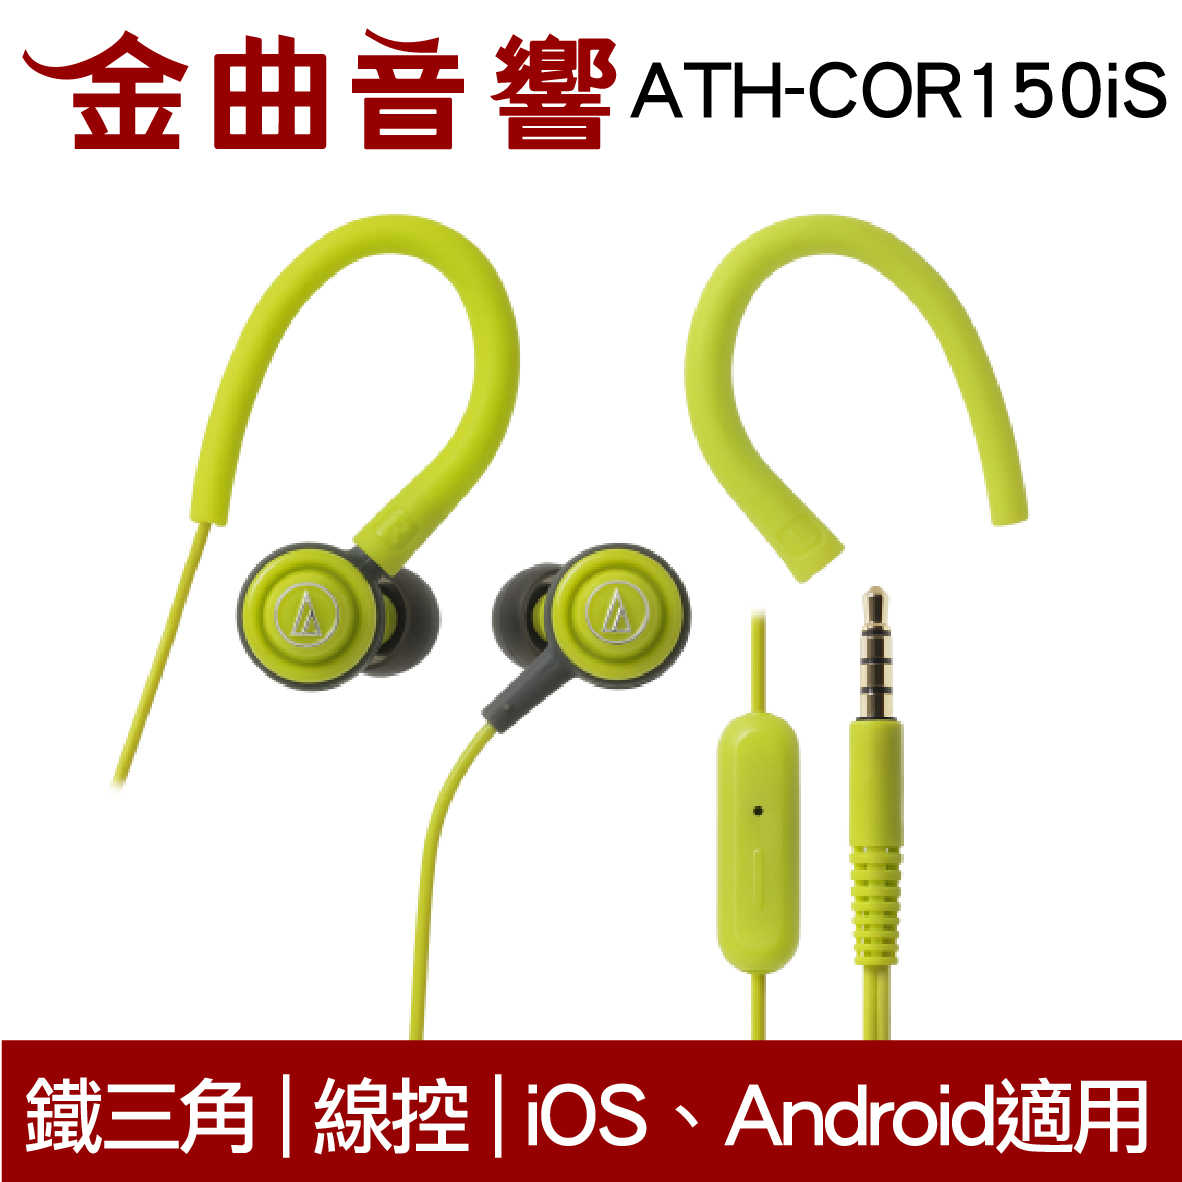 鐵三角 ATH-COR150iS 綠 線控耳道式耳機 IPhone IOS 安卓適用 | 金曲音響